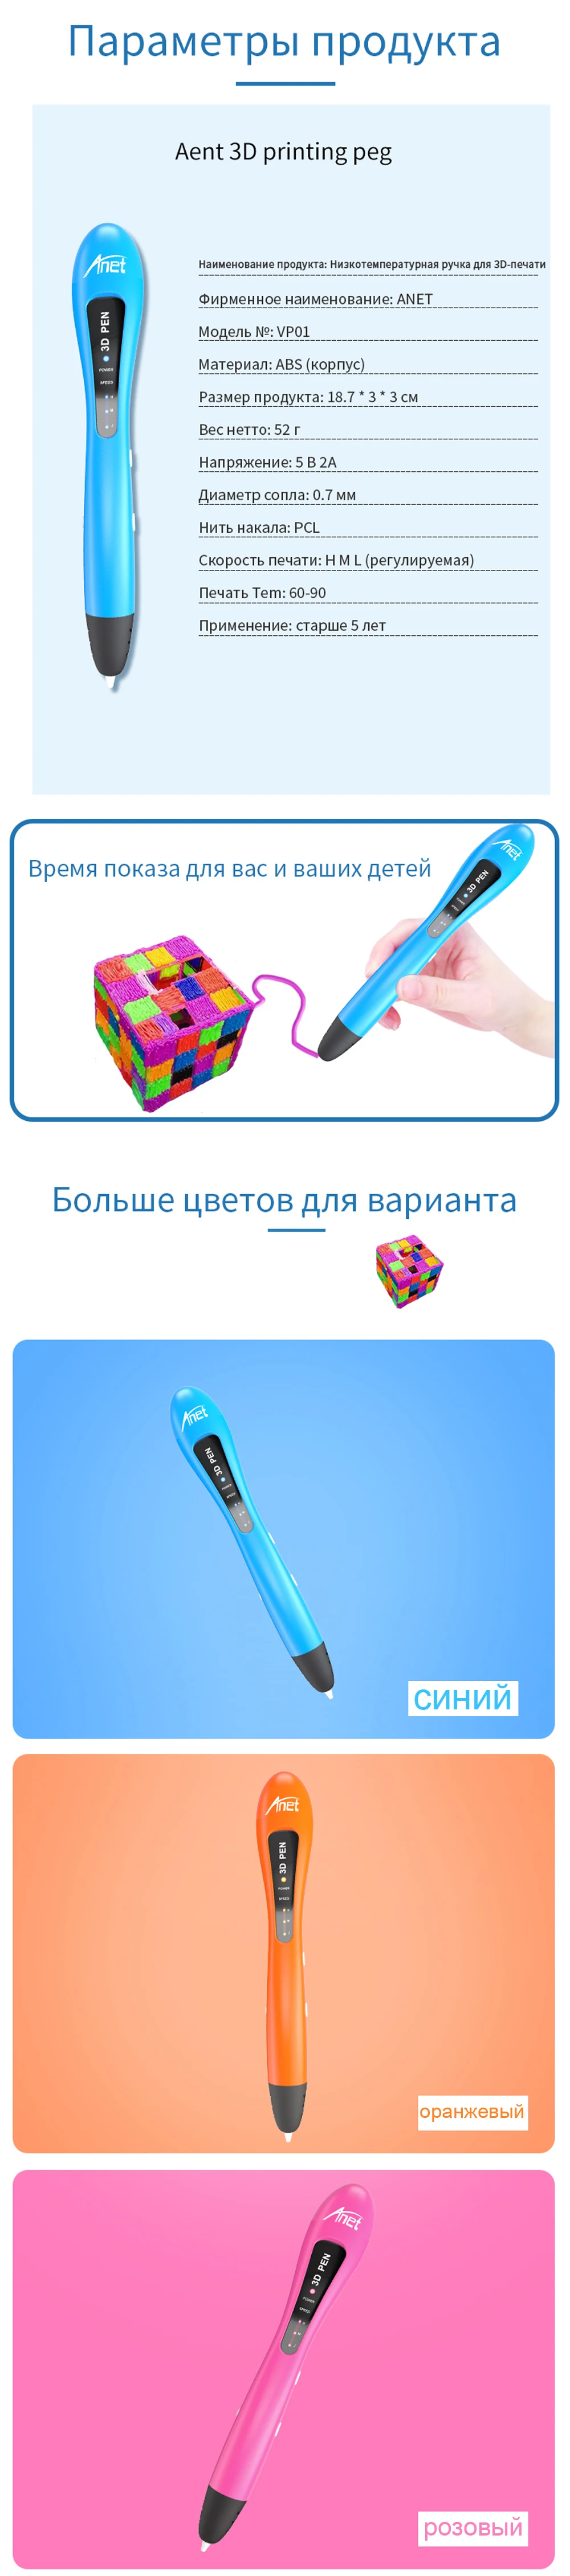 VP013D Anet низкая температура безопасный DIY 3D Ручка для детей Создание подарок с нить из ПКЛ 3D Ручка для рисования из России